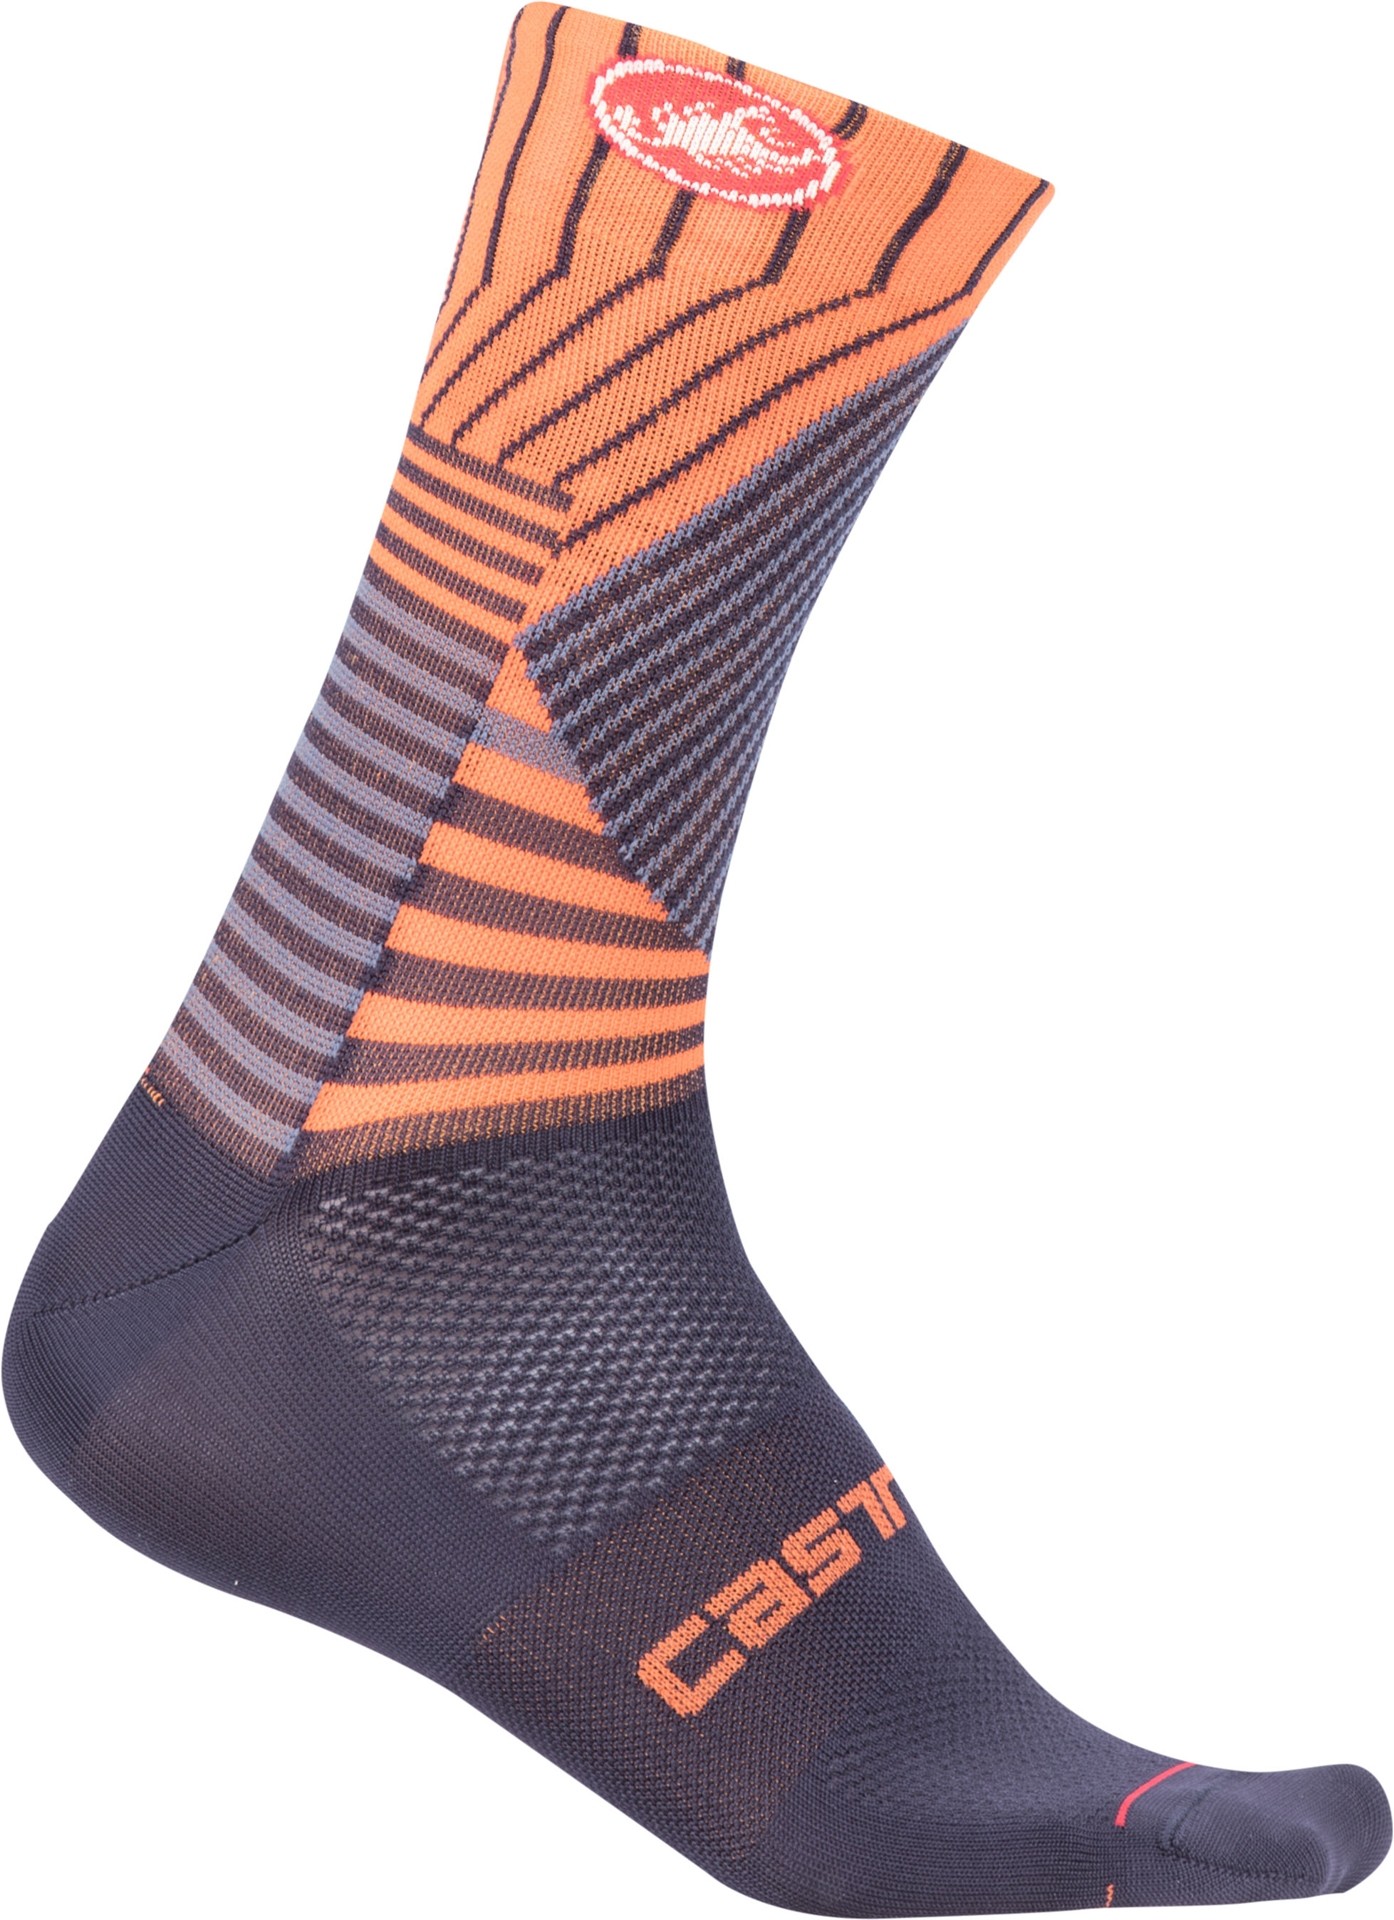 Castelli pro mesh 15 chaussures de cyclisme steel blue foncé orange